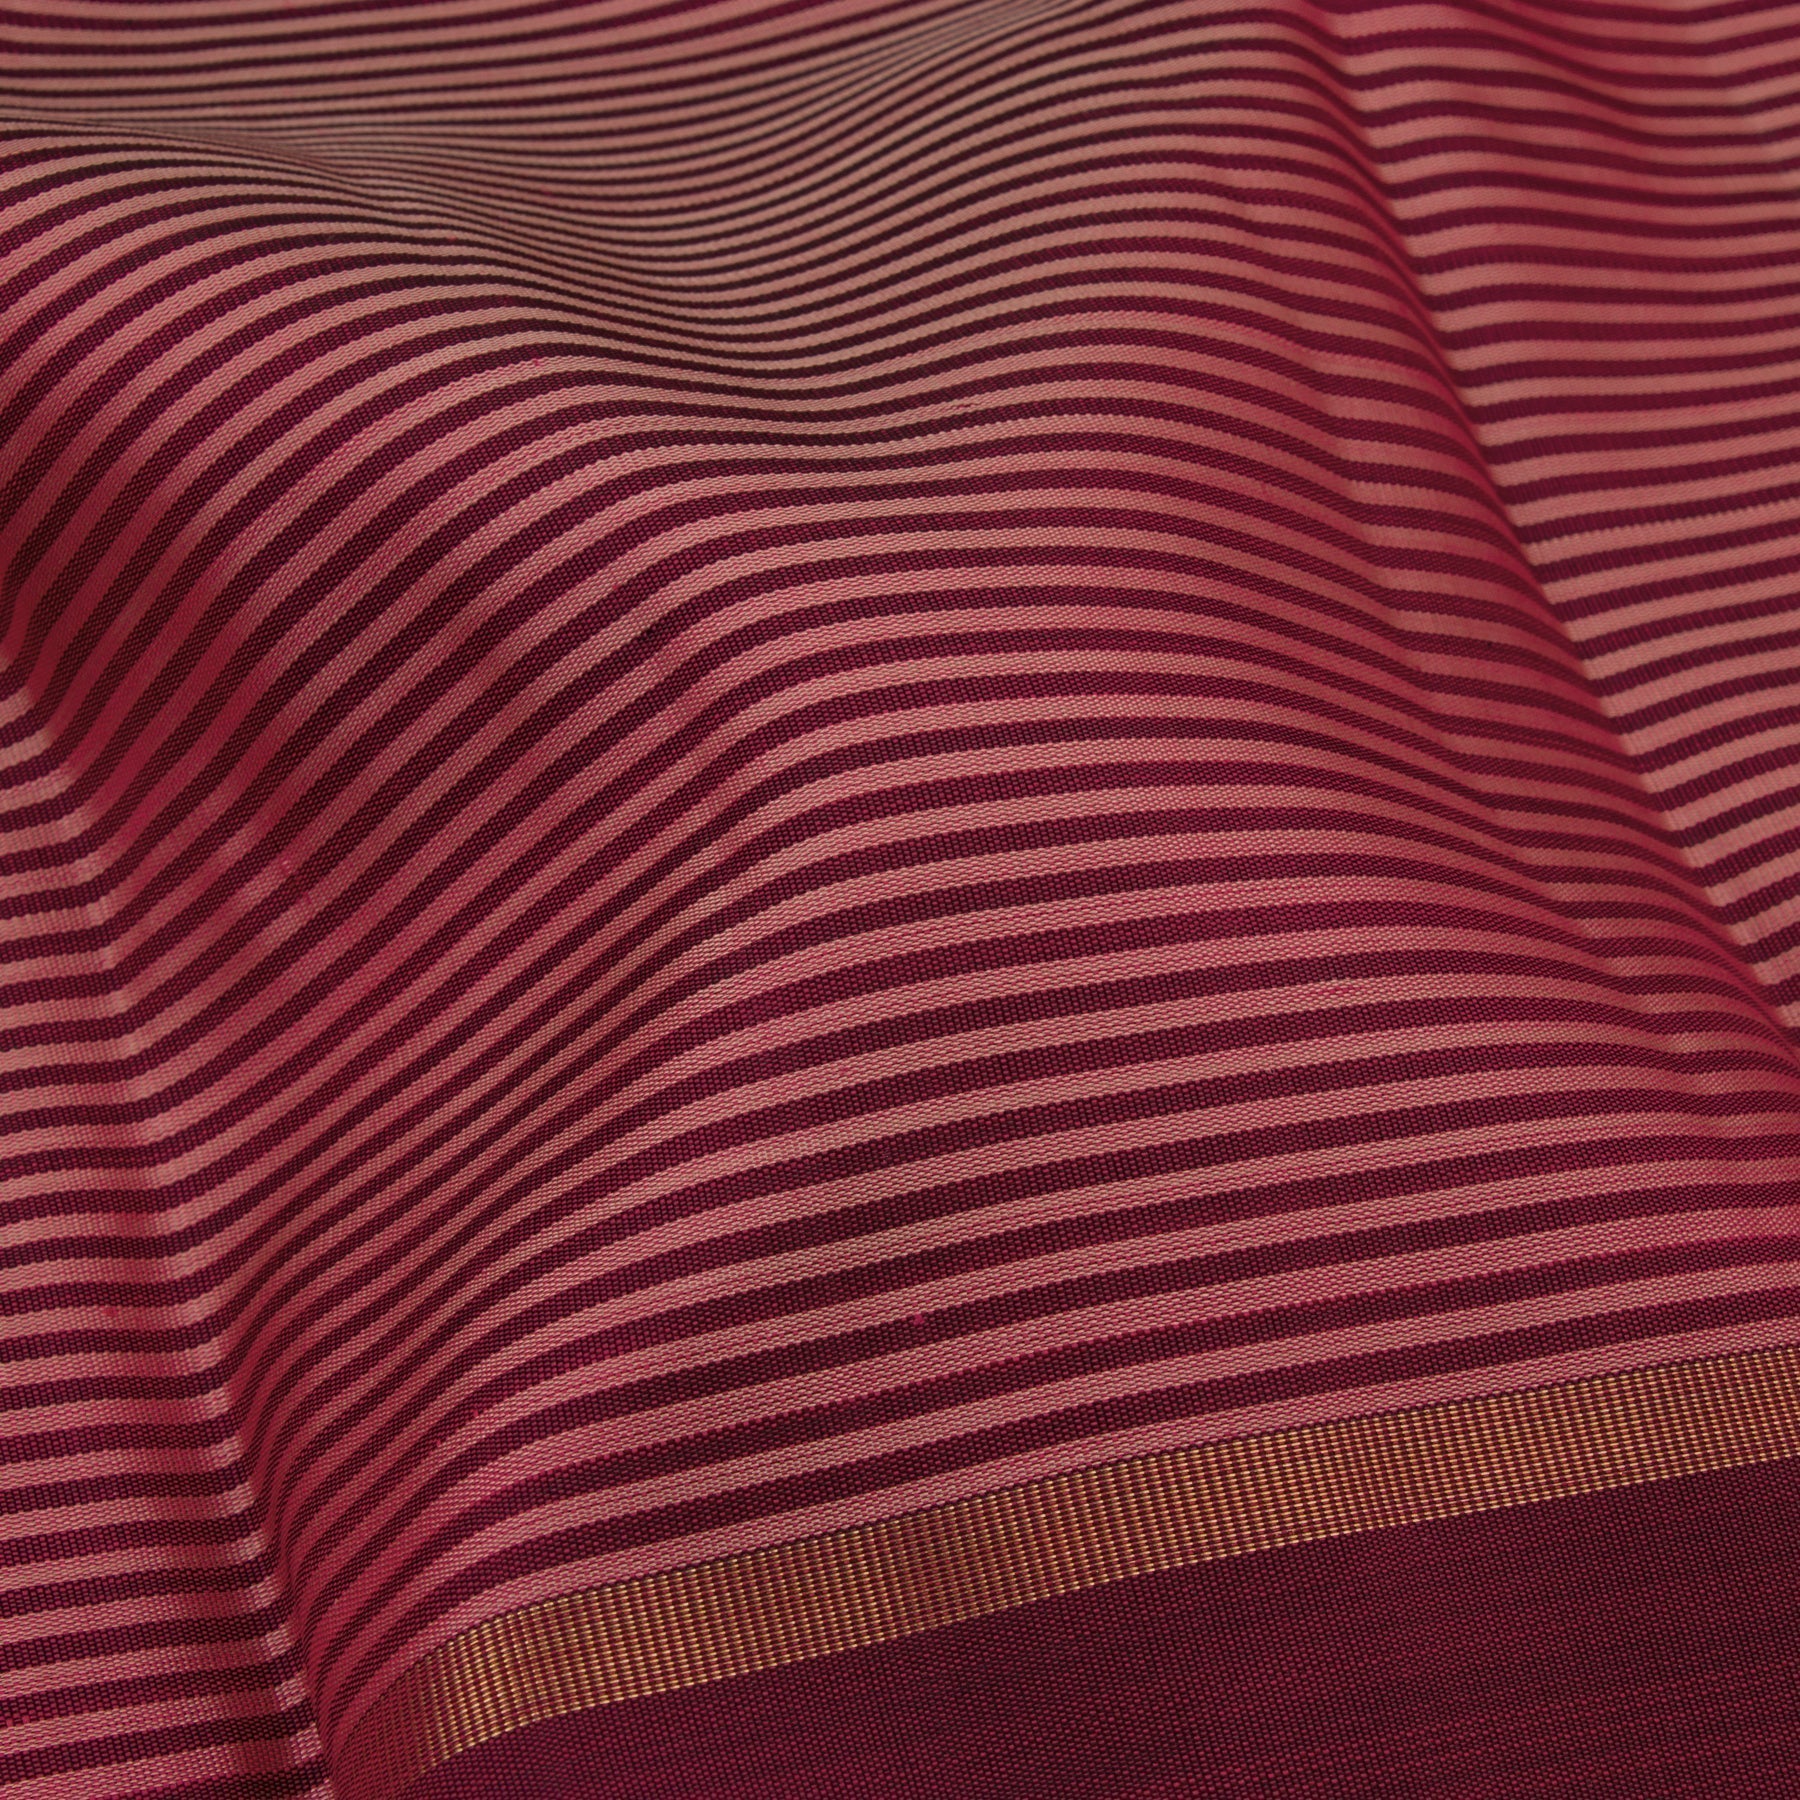 Kanakavalli Kanjivaram Silk Sari 22-601-HS001-00444 - Fabric View